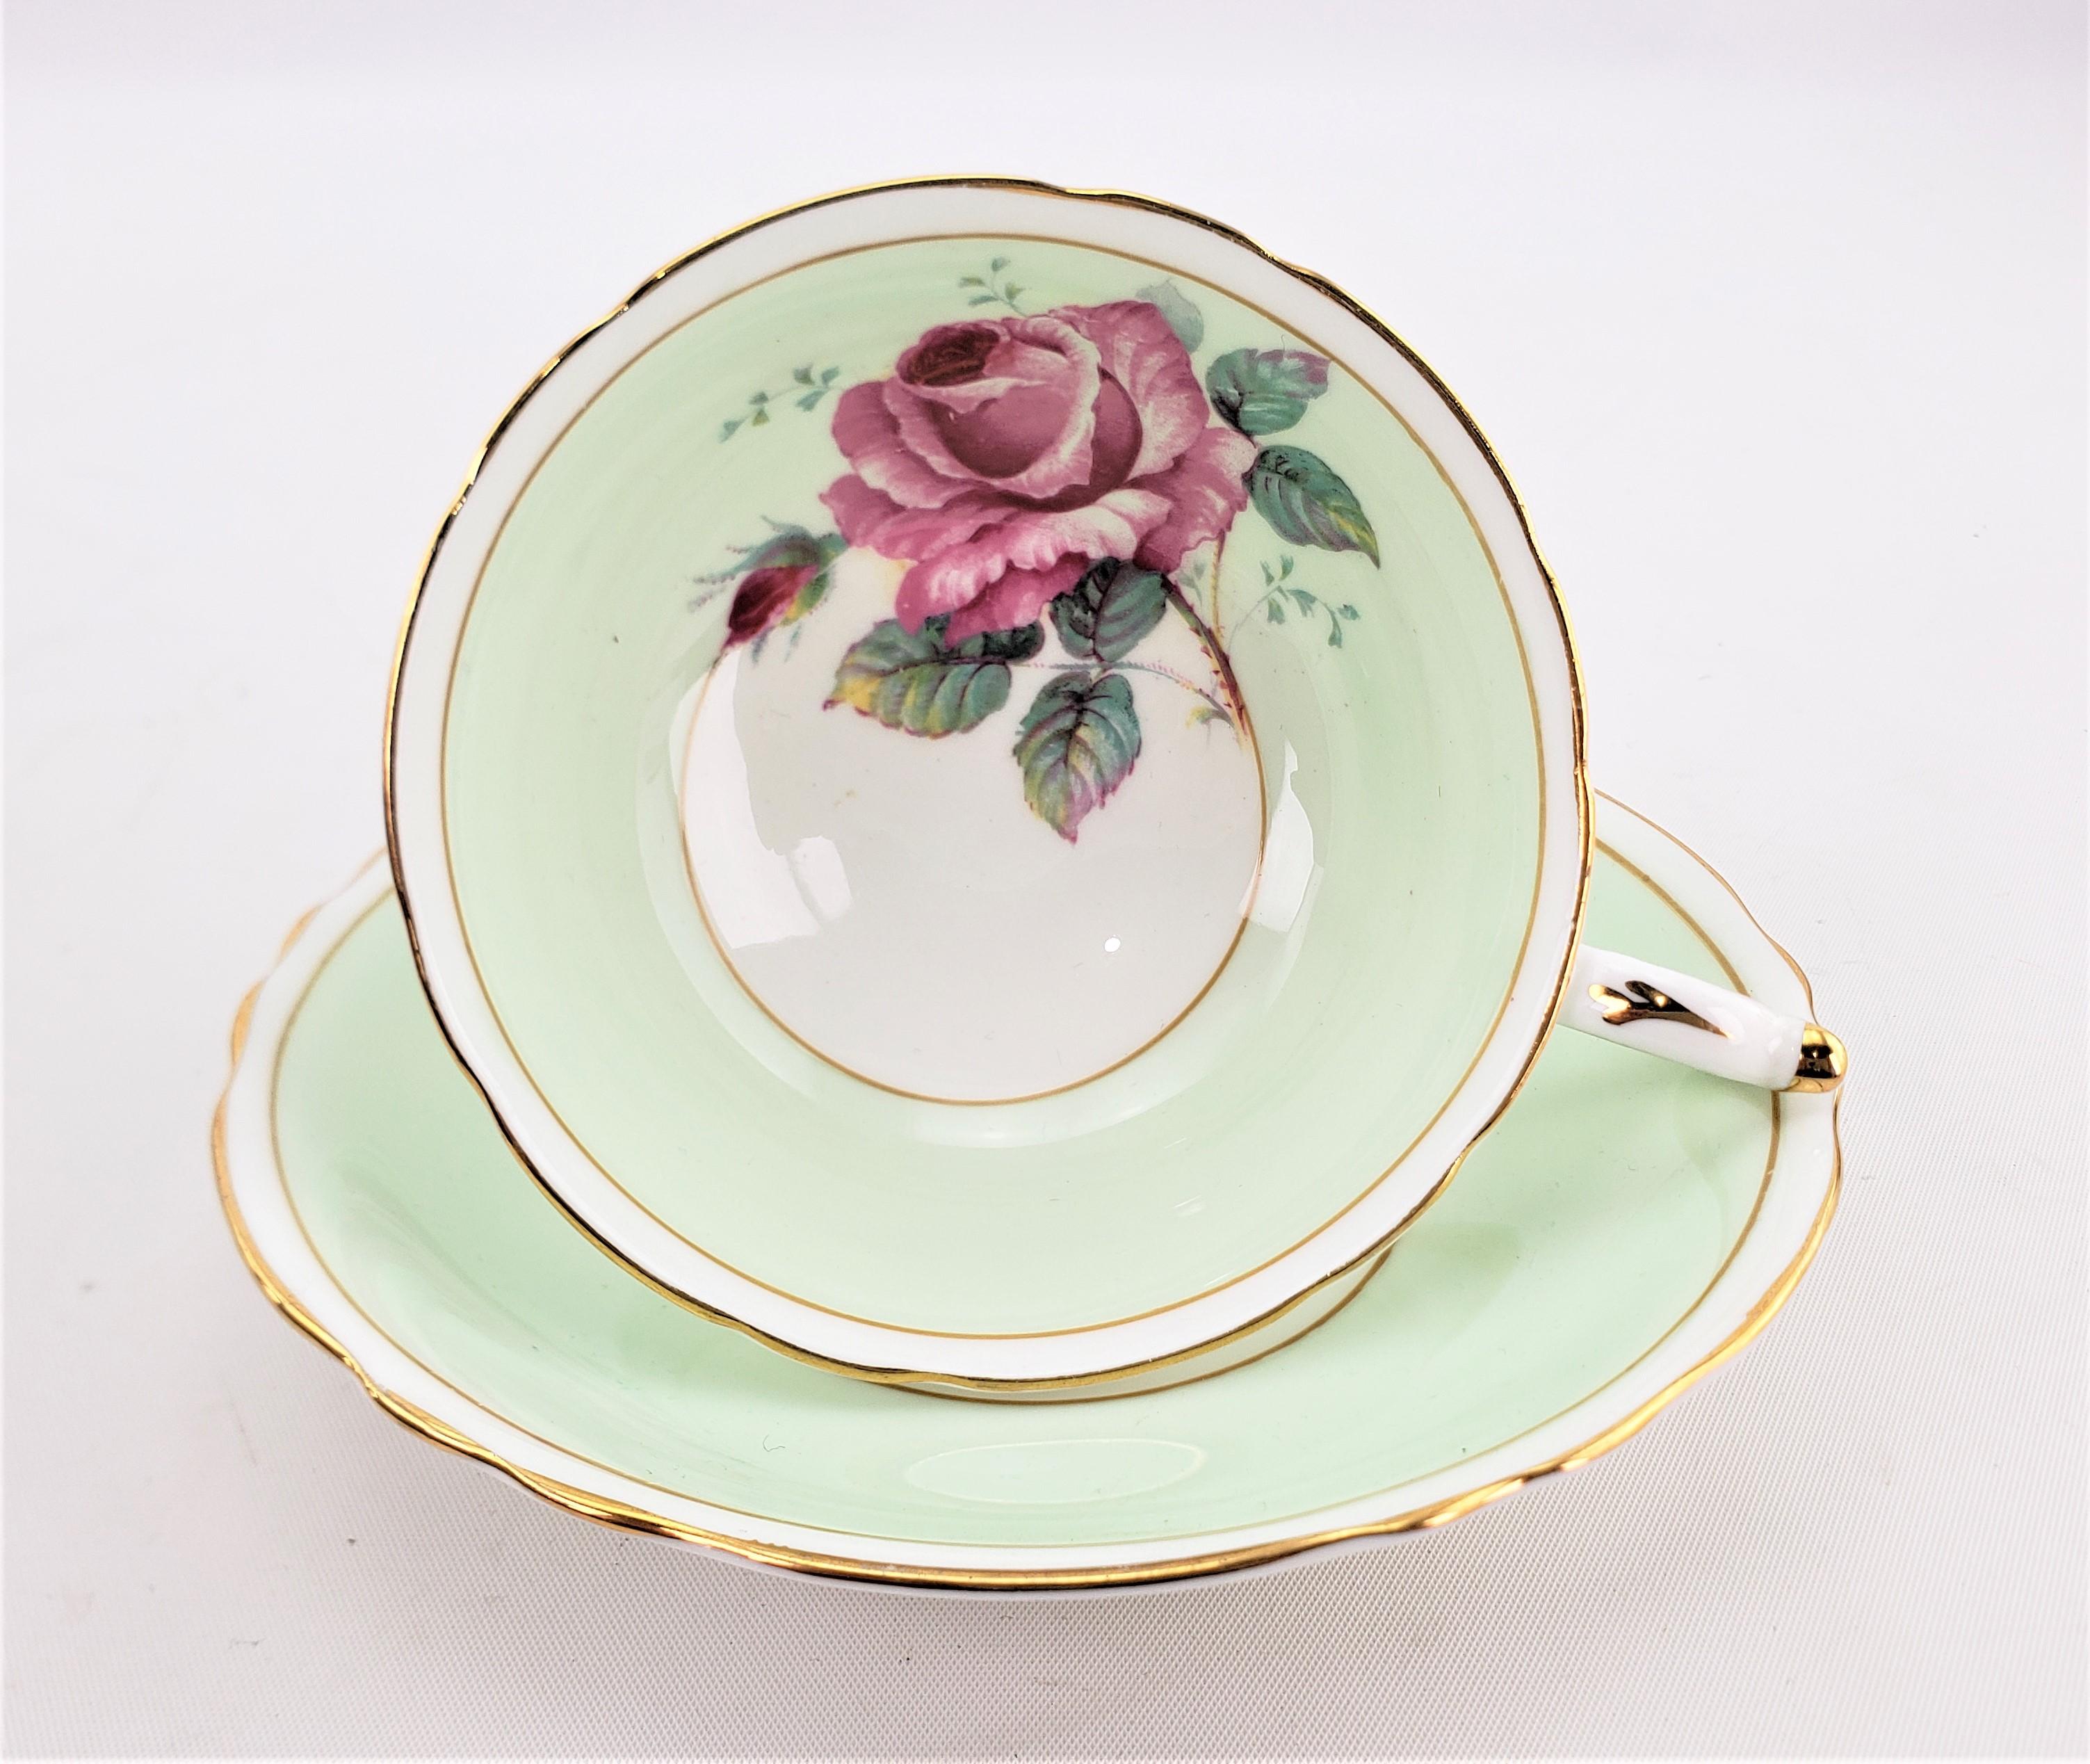 Dieses Set aus Teetasse und Untertasse wurde von der renommierten englischen Porzellanfabrik Paragon um 1960 hergestellt. Das Set hat einen pastellfarbenen mintgrünen Grund mit einer großen, rot abgesetzten Kohlrose auf der Innenseite der Tasse, die